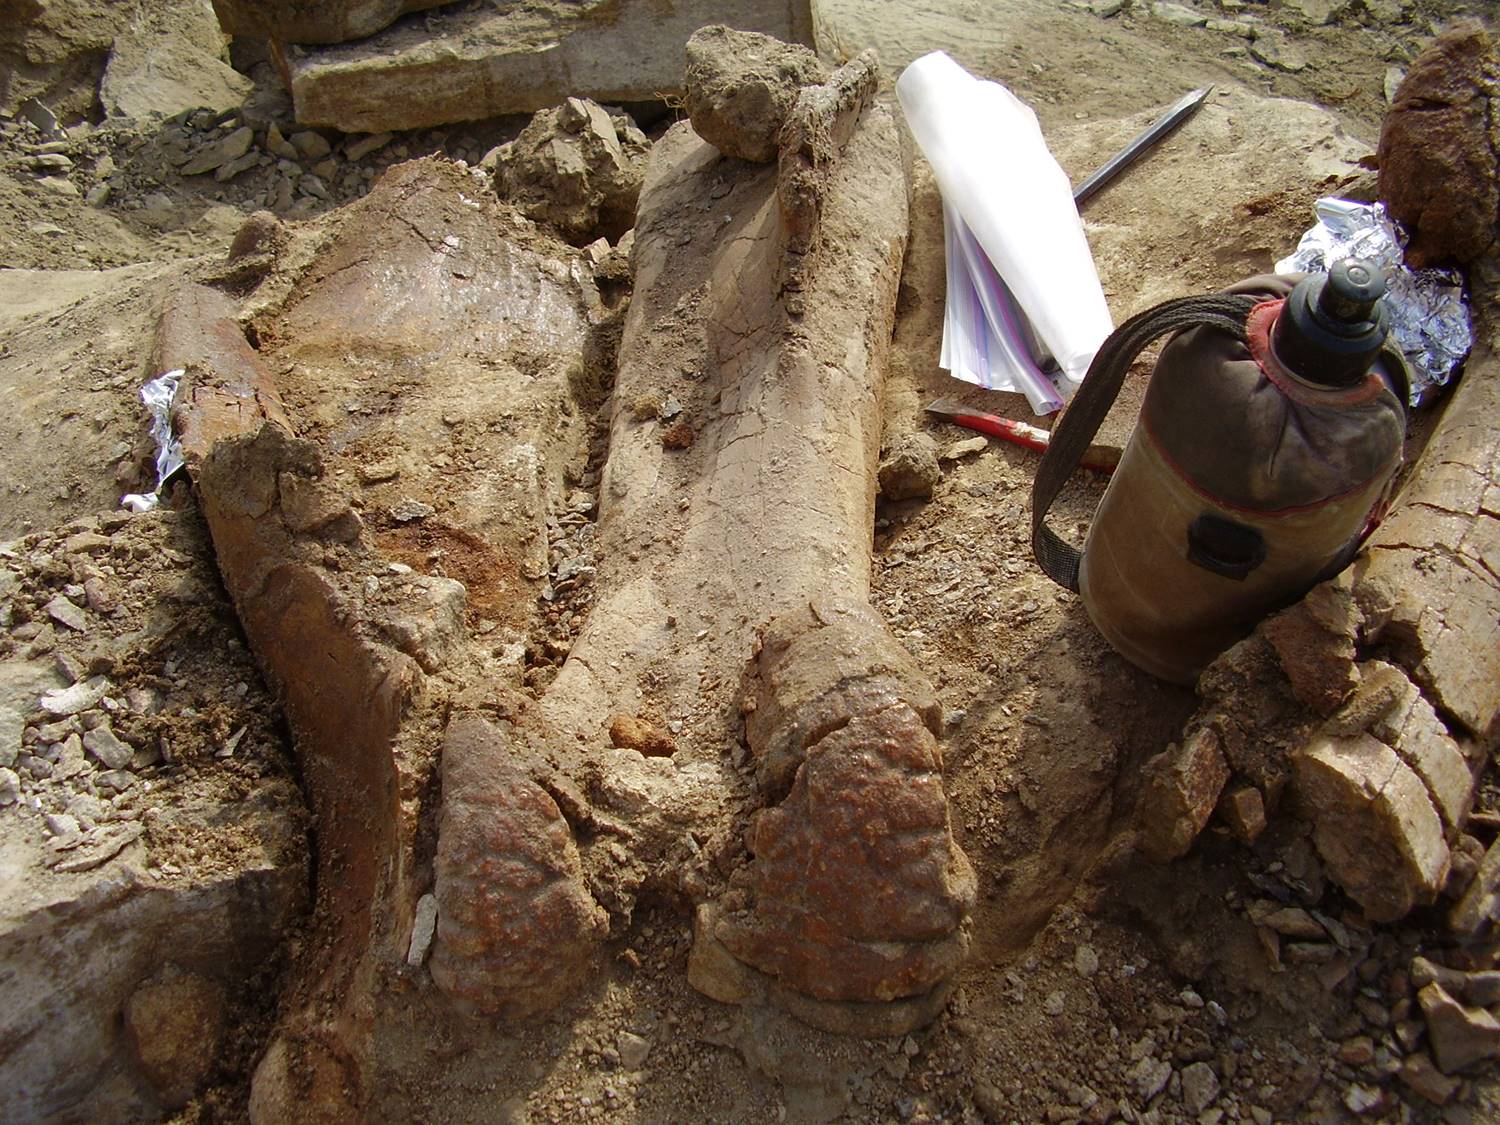 Fosilie edmontosaurů jsou známé z mnoha lokalit na území Severní Ameriky. Toto je fragment stehenní kosti mladého, subadultního jedince druhu Edmontosaurus annectens, na jehož vykopávkách se autor článku podílel v roce 2009 v rámci dobrovolnické prác